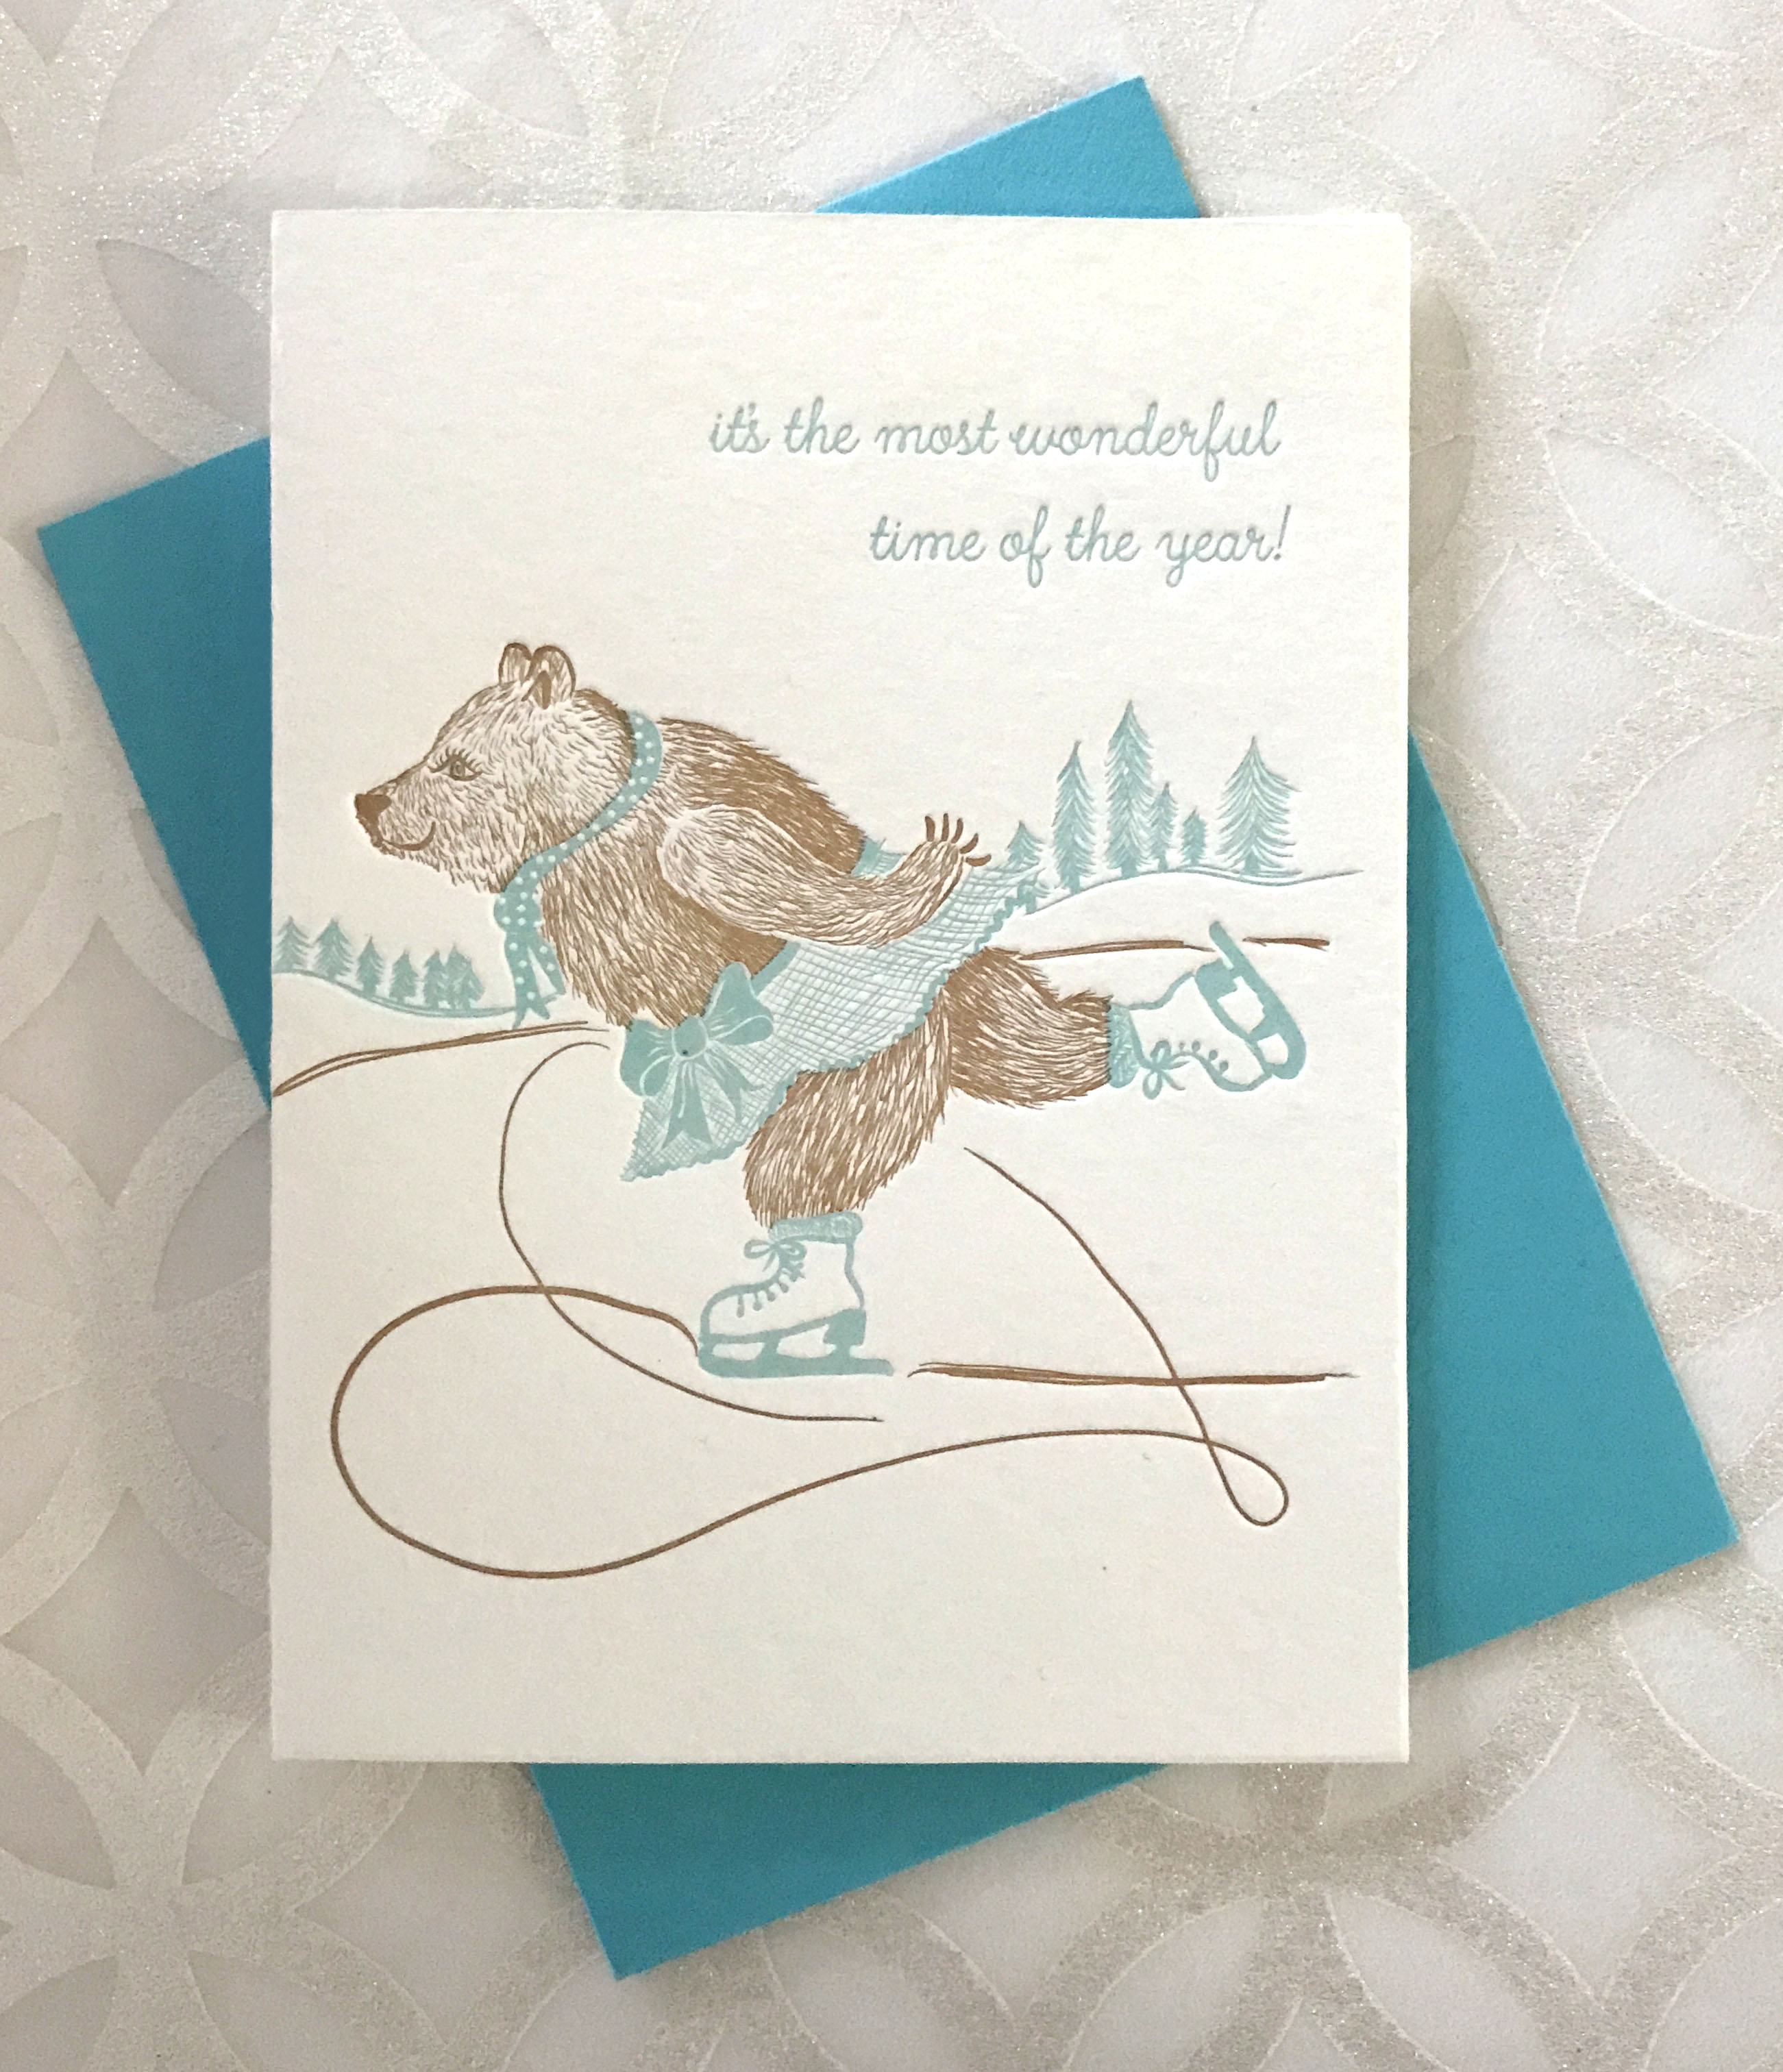 Letterpressed Ice Skating Card 
															/ Colorbox Design & Letterpress							